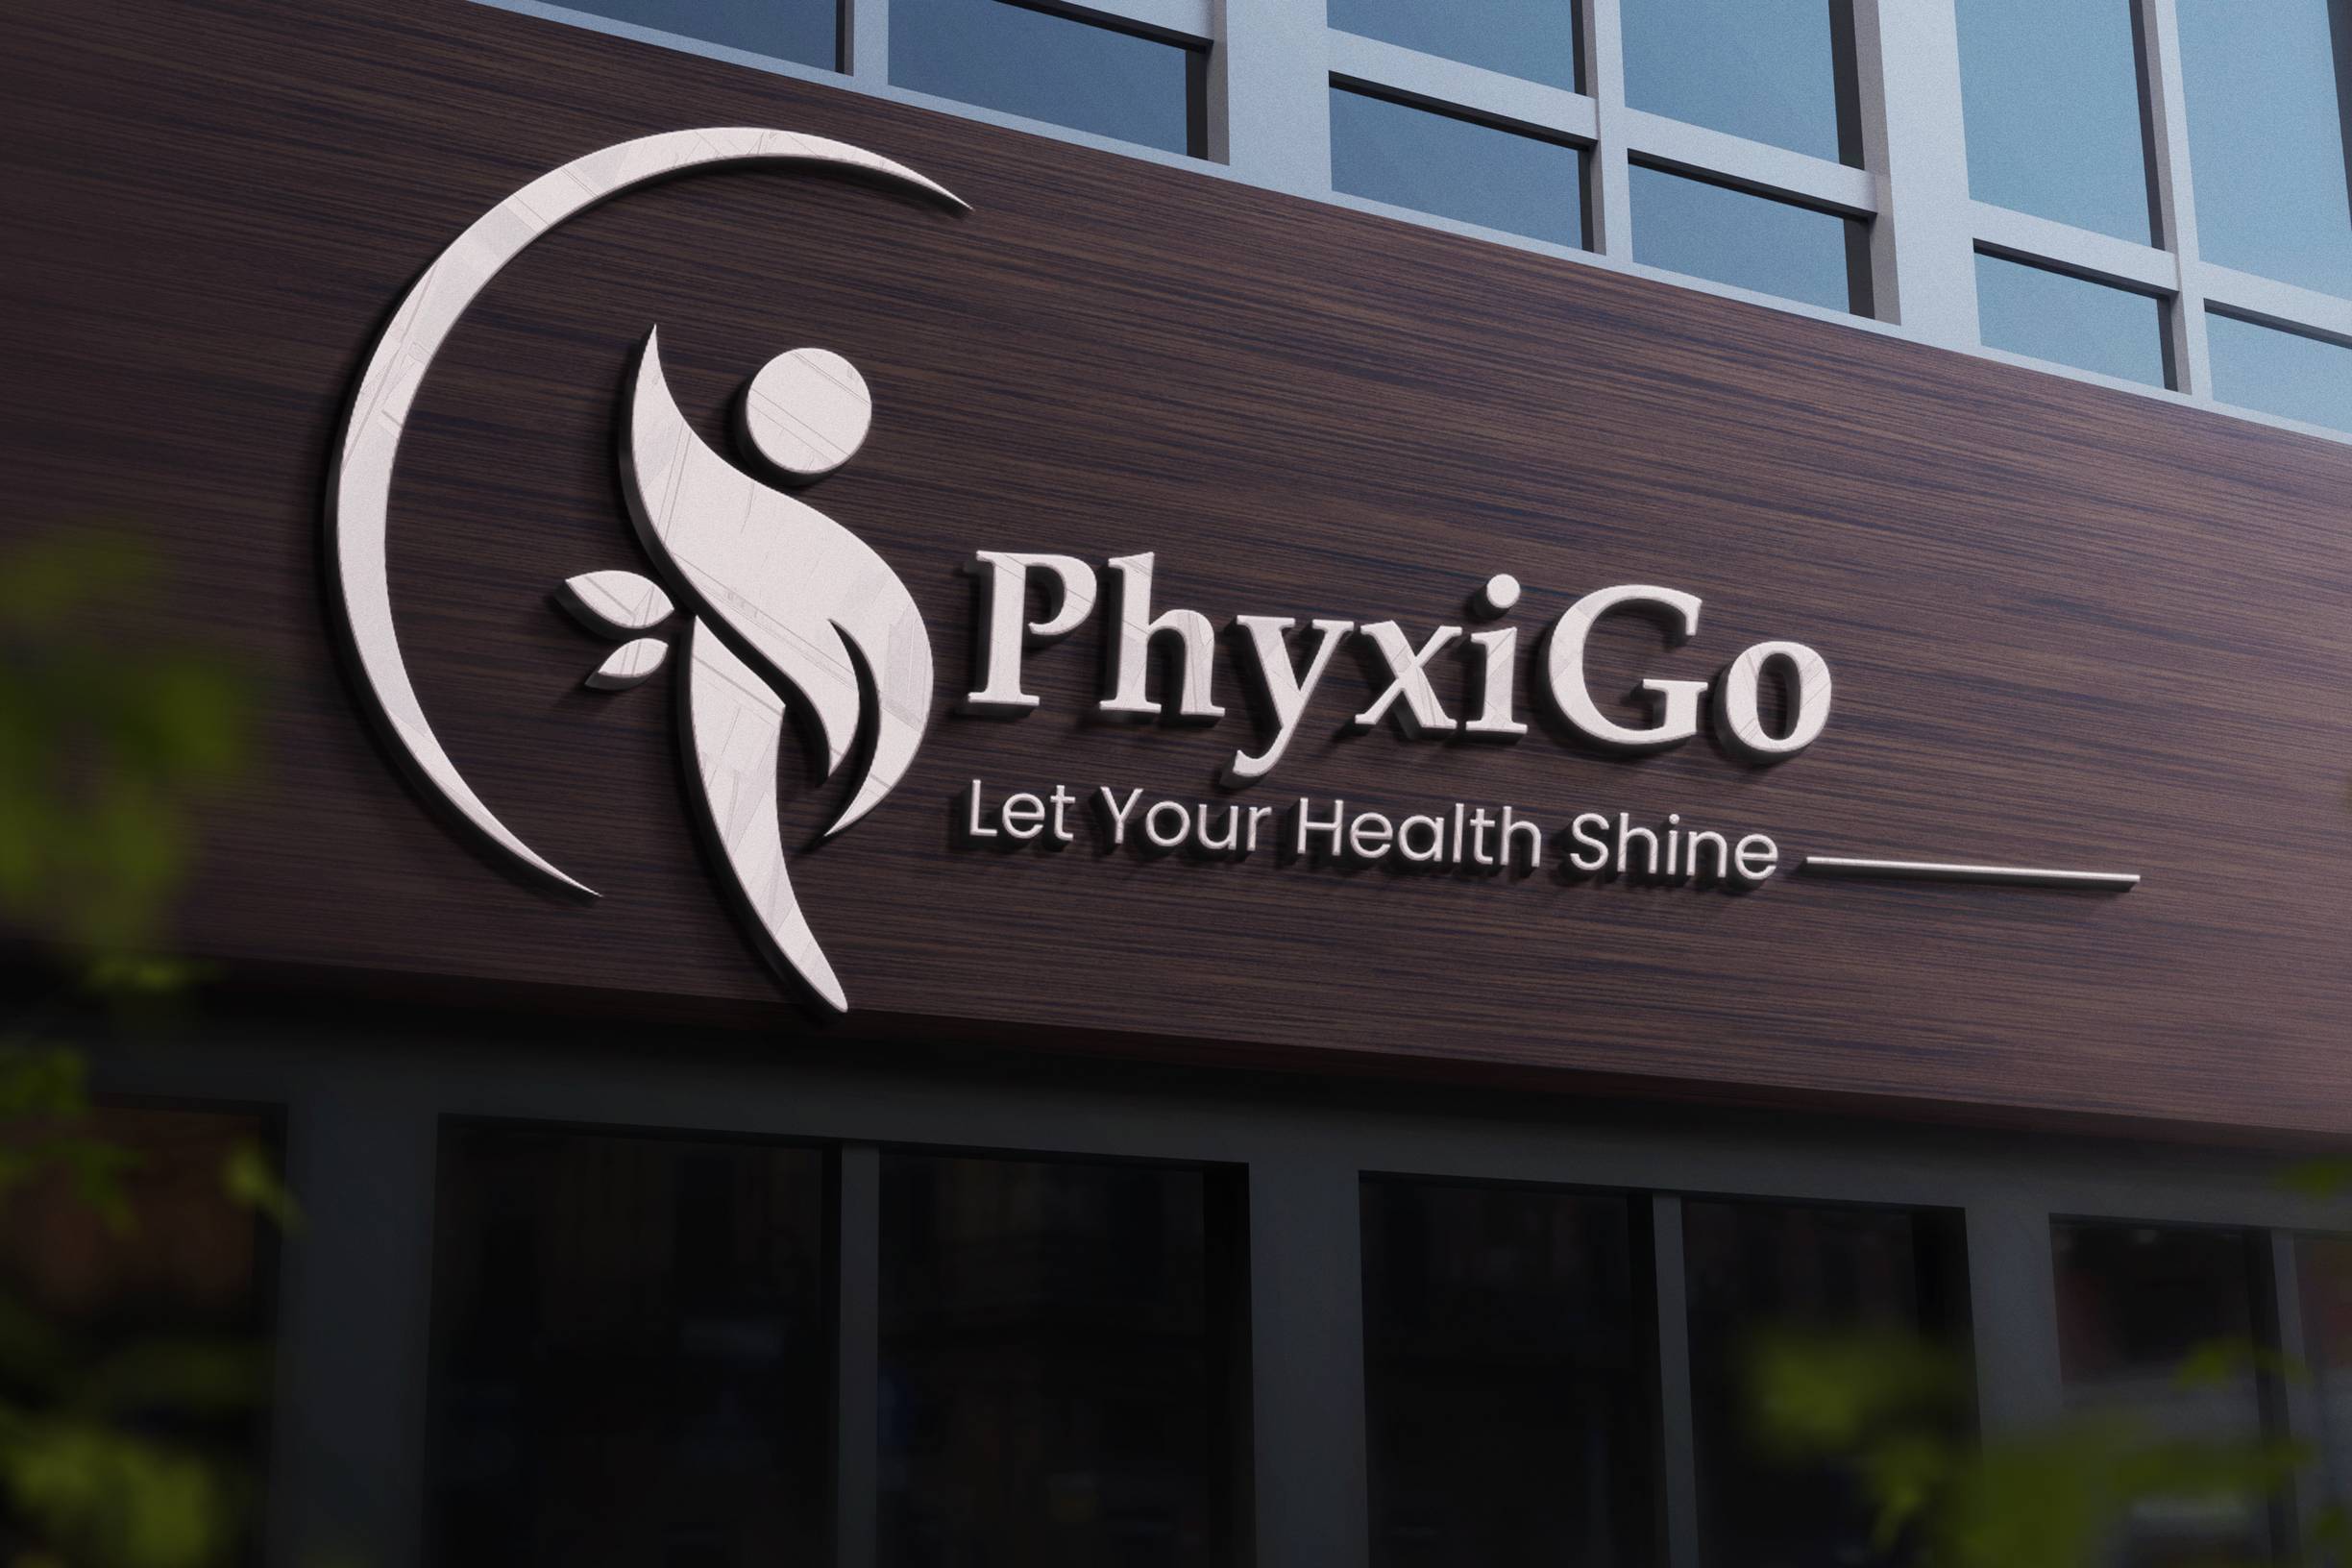 PhyxiGo Branding Kit 3D